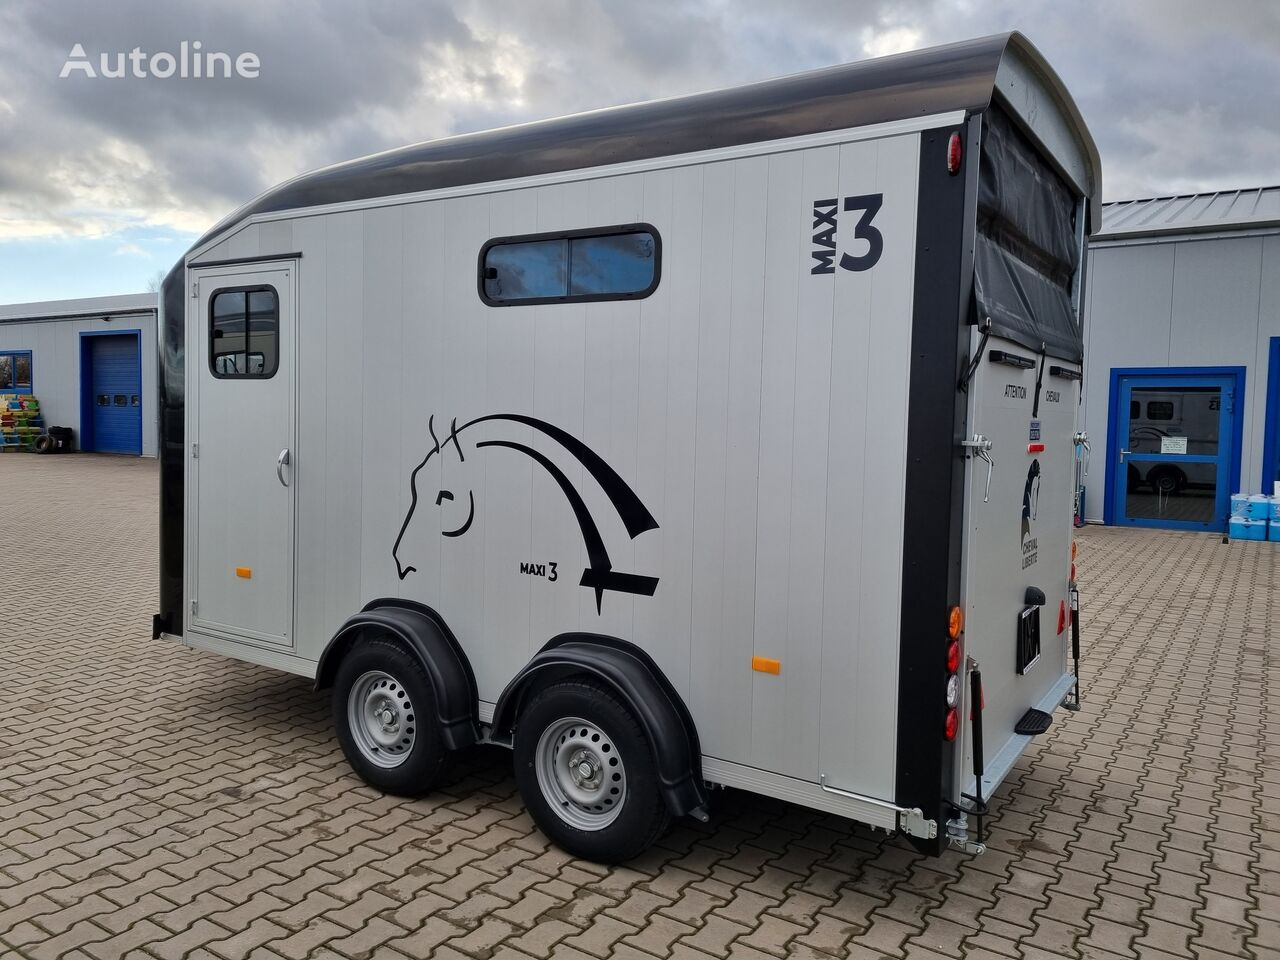 신규 말 트레일러 Cheval Liberté Maxi 3 Minimax trailer for 3 horses GVW 3500kg tack room saddle : 사진 12